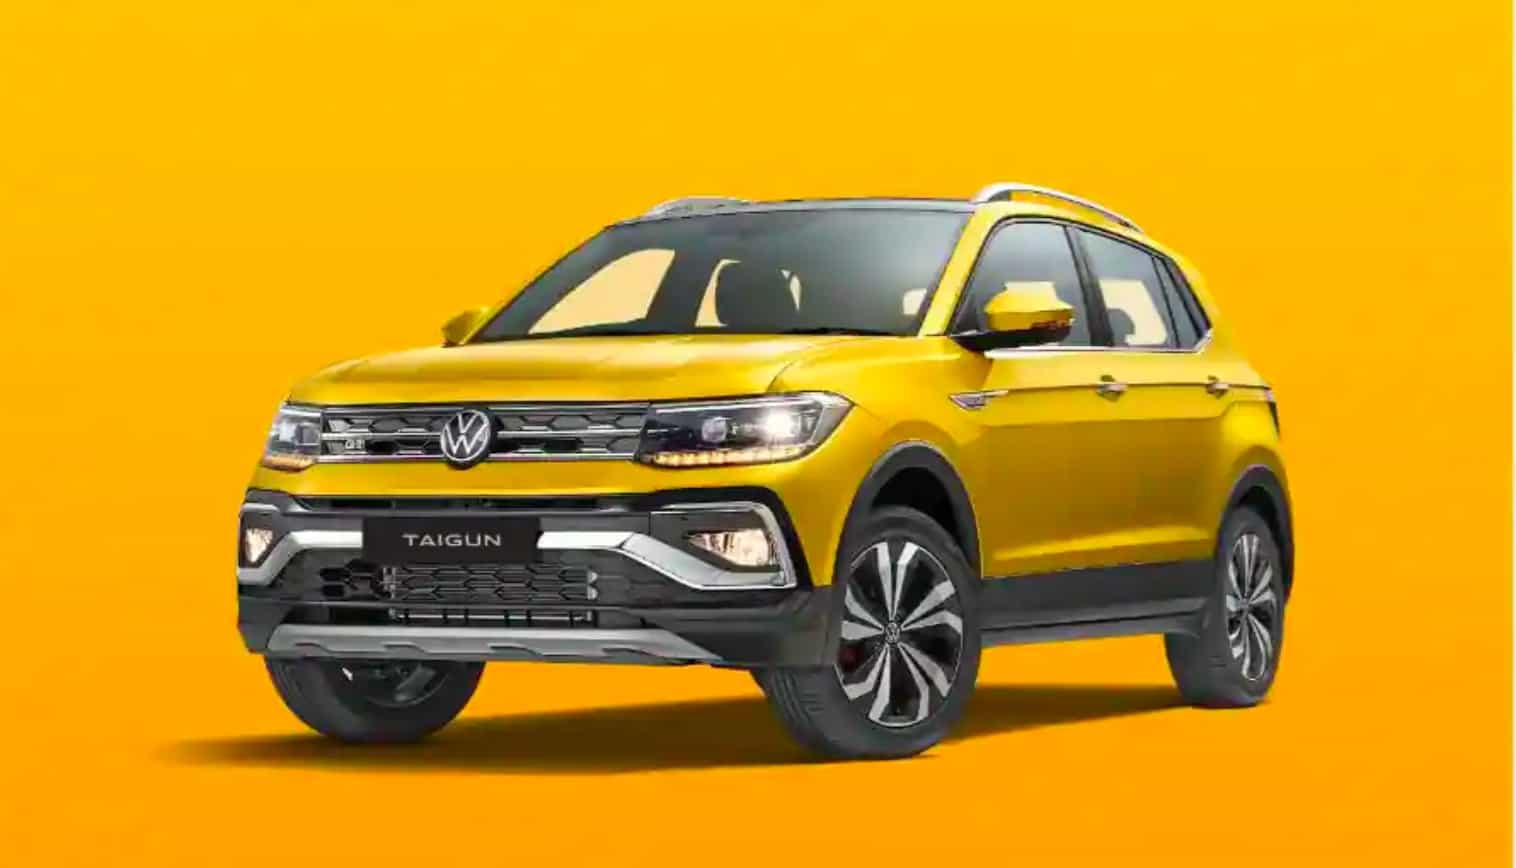 Volkswagen Cars Price|Volkswagen Polo|Volkswagen Vento|Volkswagen Taigun||Volkswagen Taigun